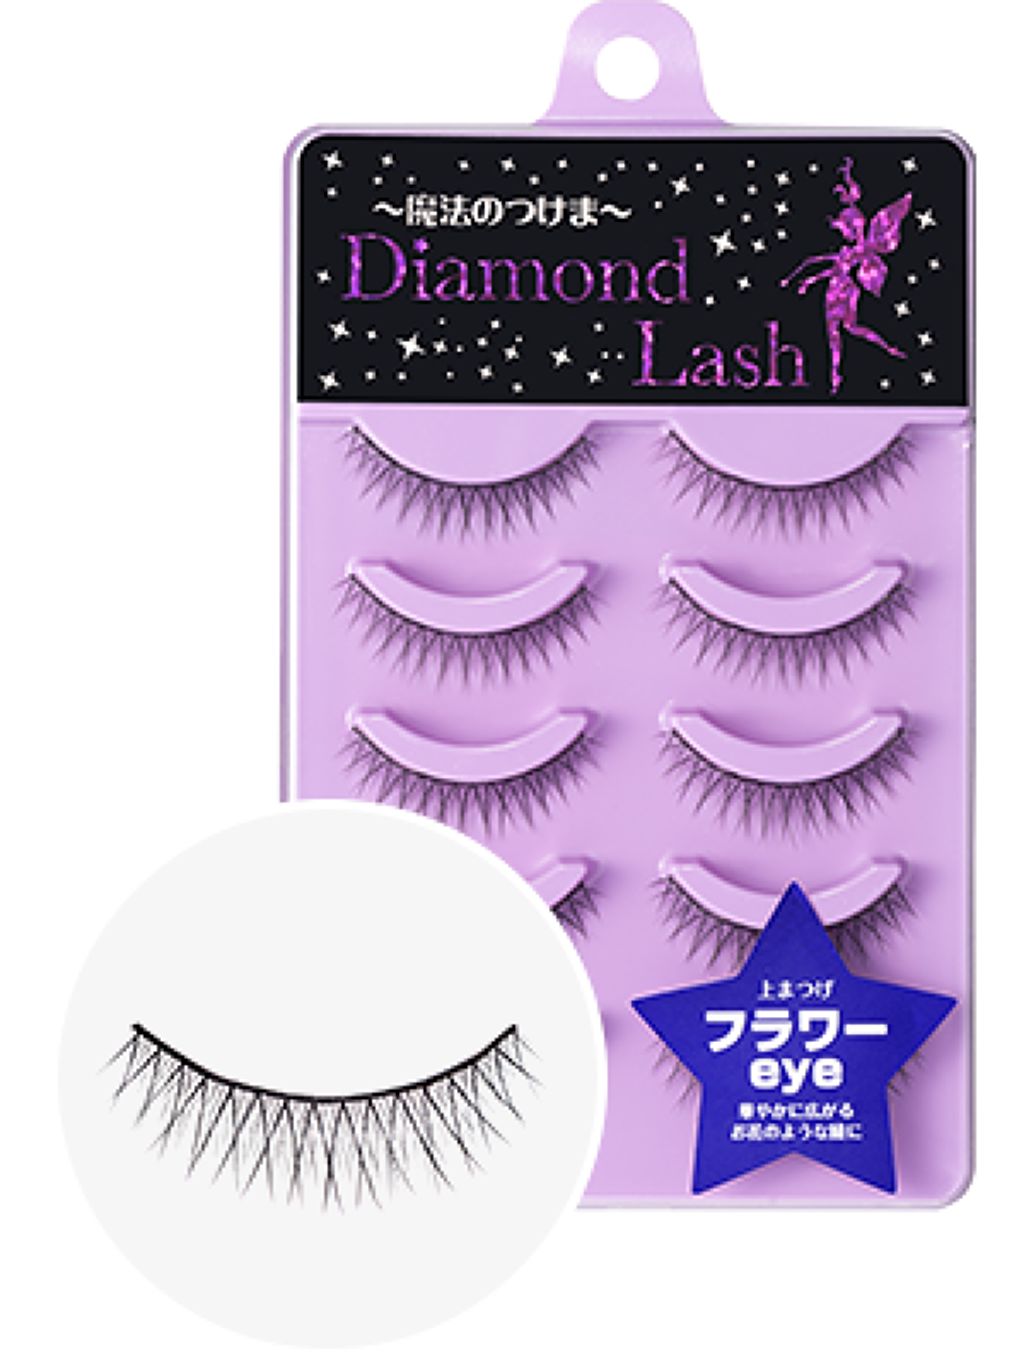 1000円以下 ダイヤモンドラッシュ レディグラマラスシリーズ Diamond Lashのリアルな口コミ レビュー Lips